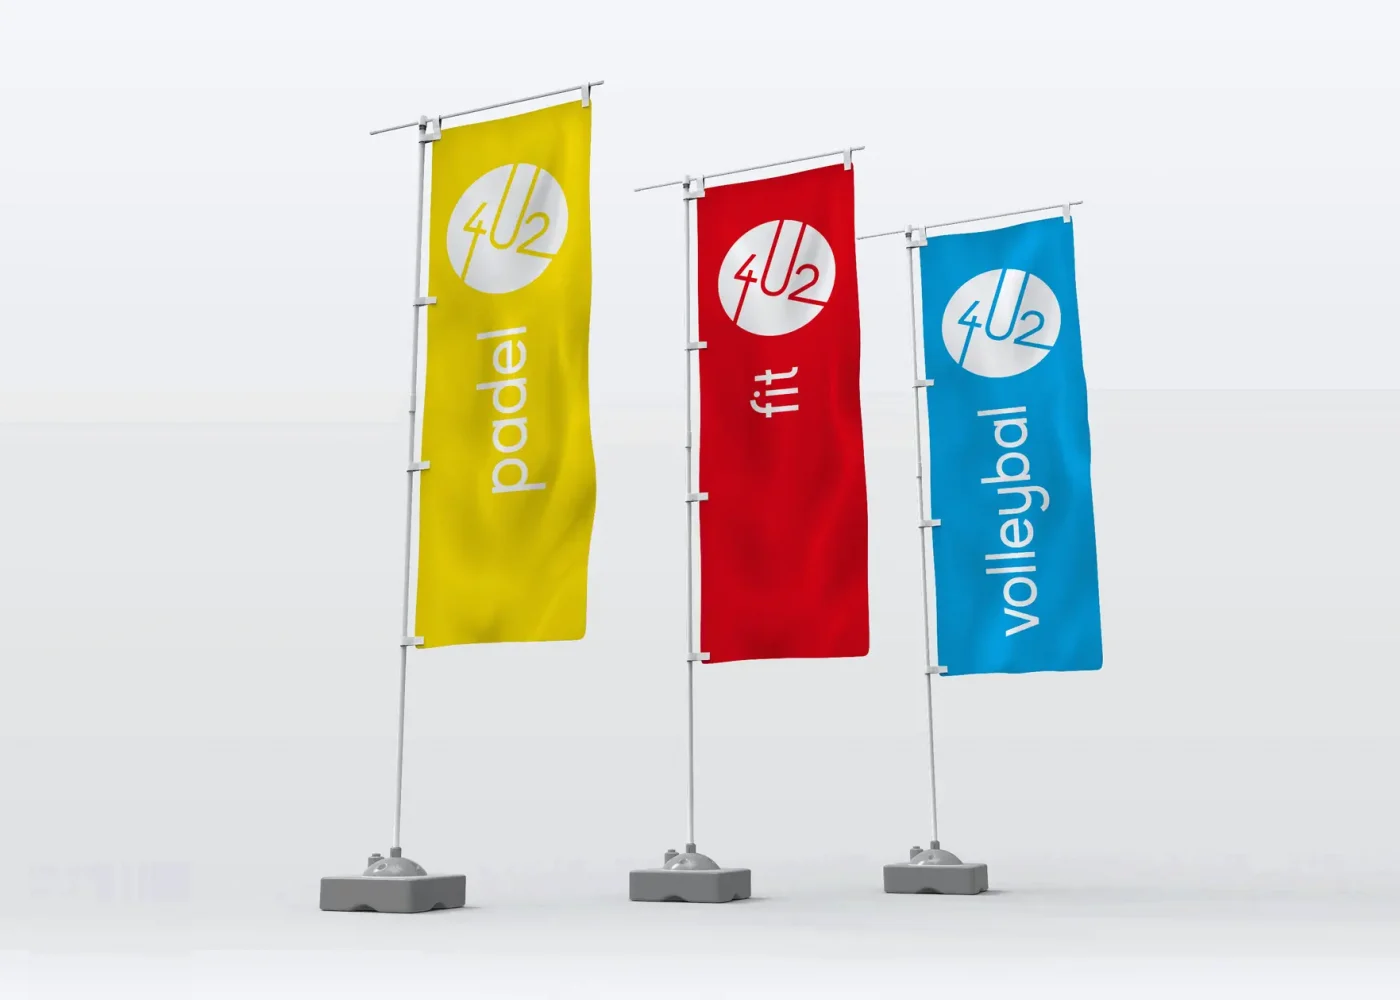 Een beachflag mockup van het logo en huisstijl ontwerp van Padel 4u2 Gentbrugge